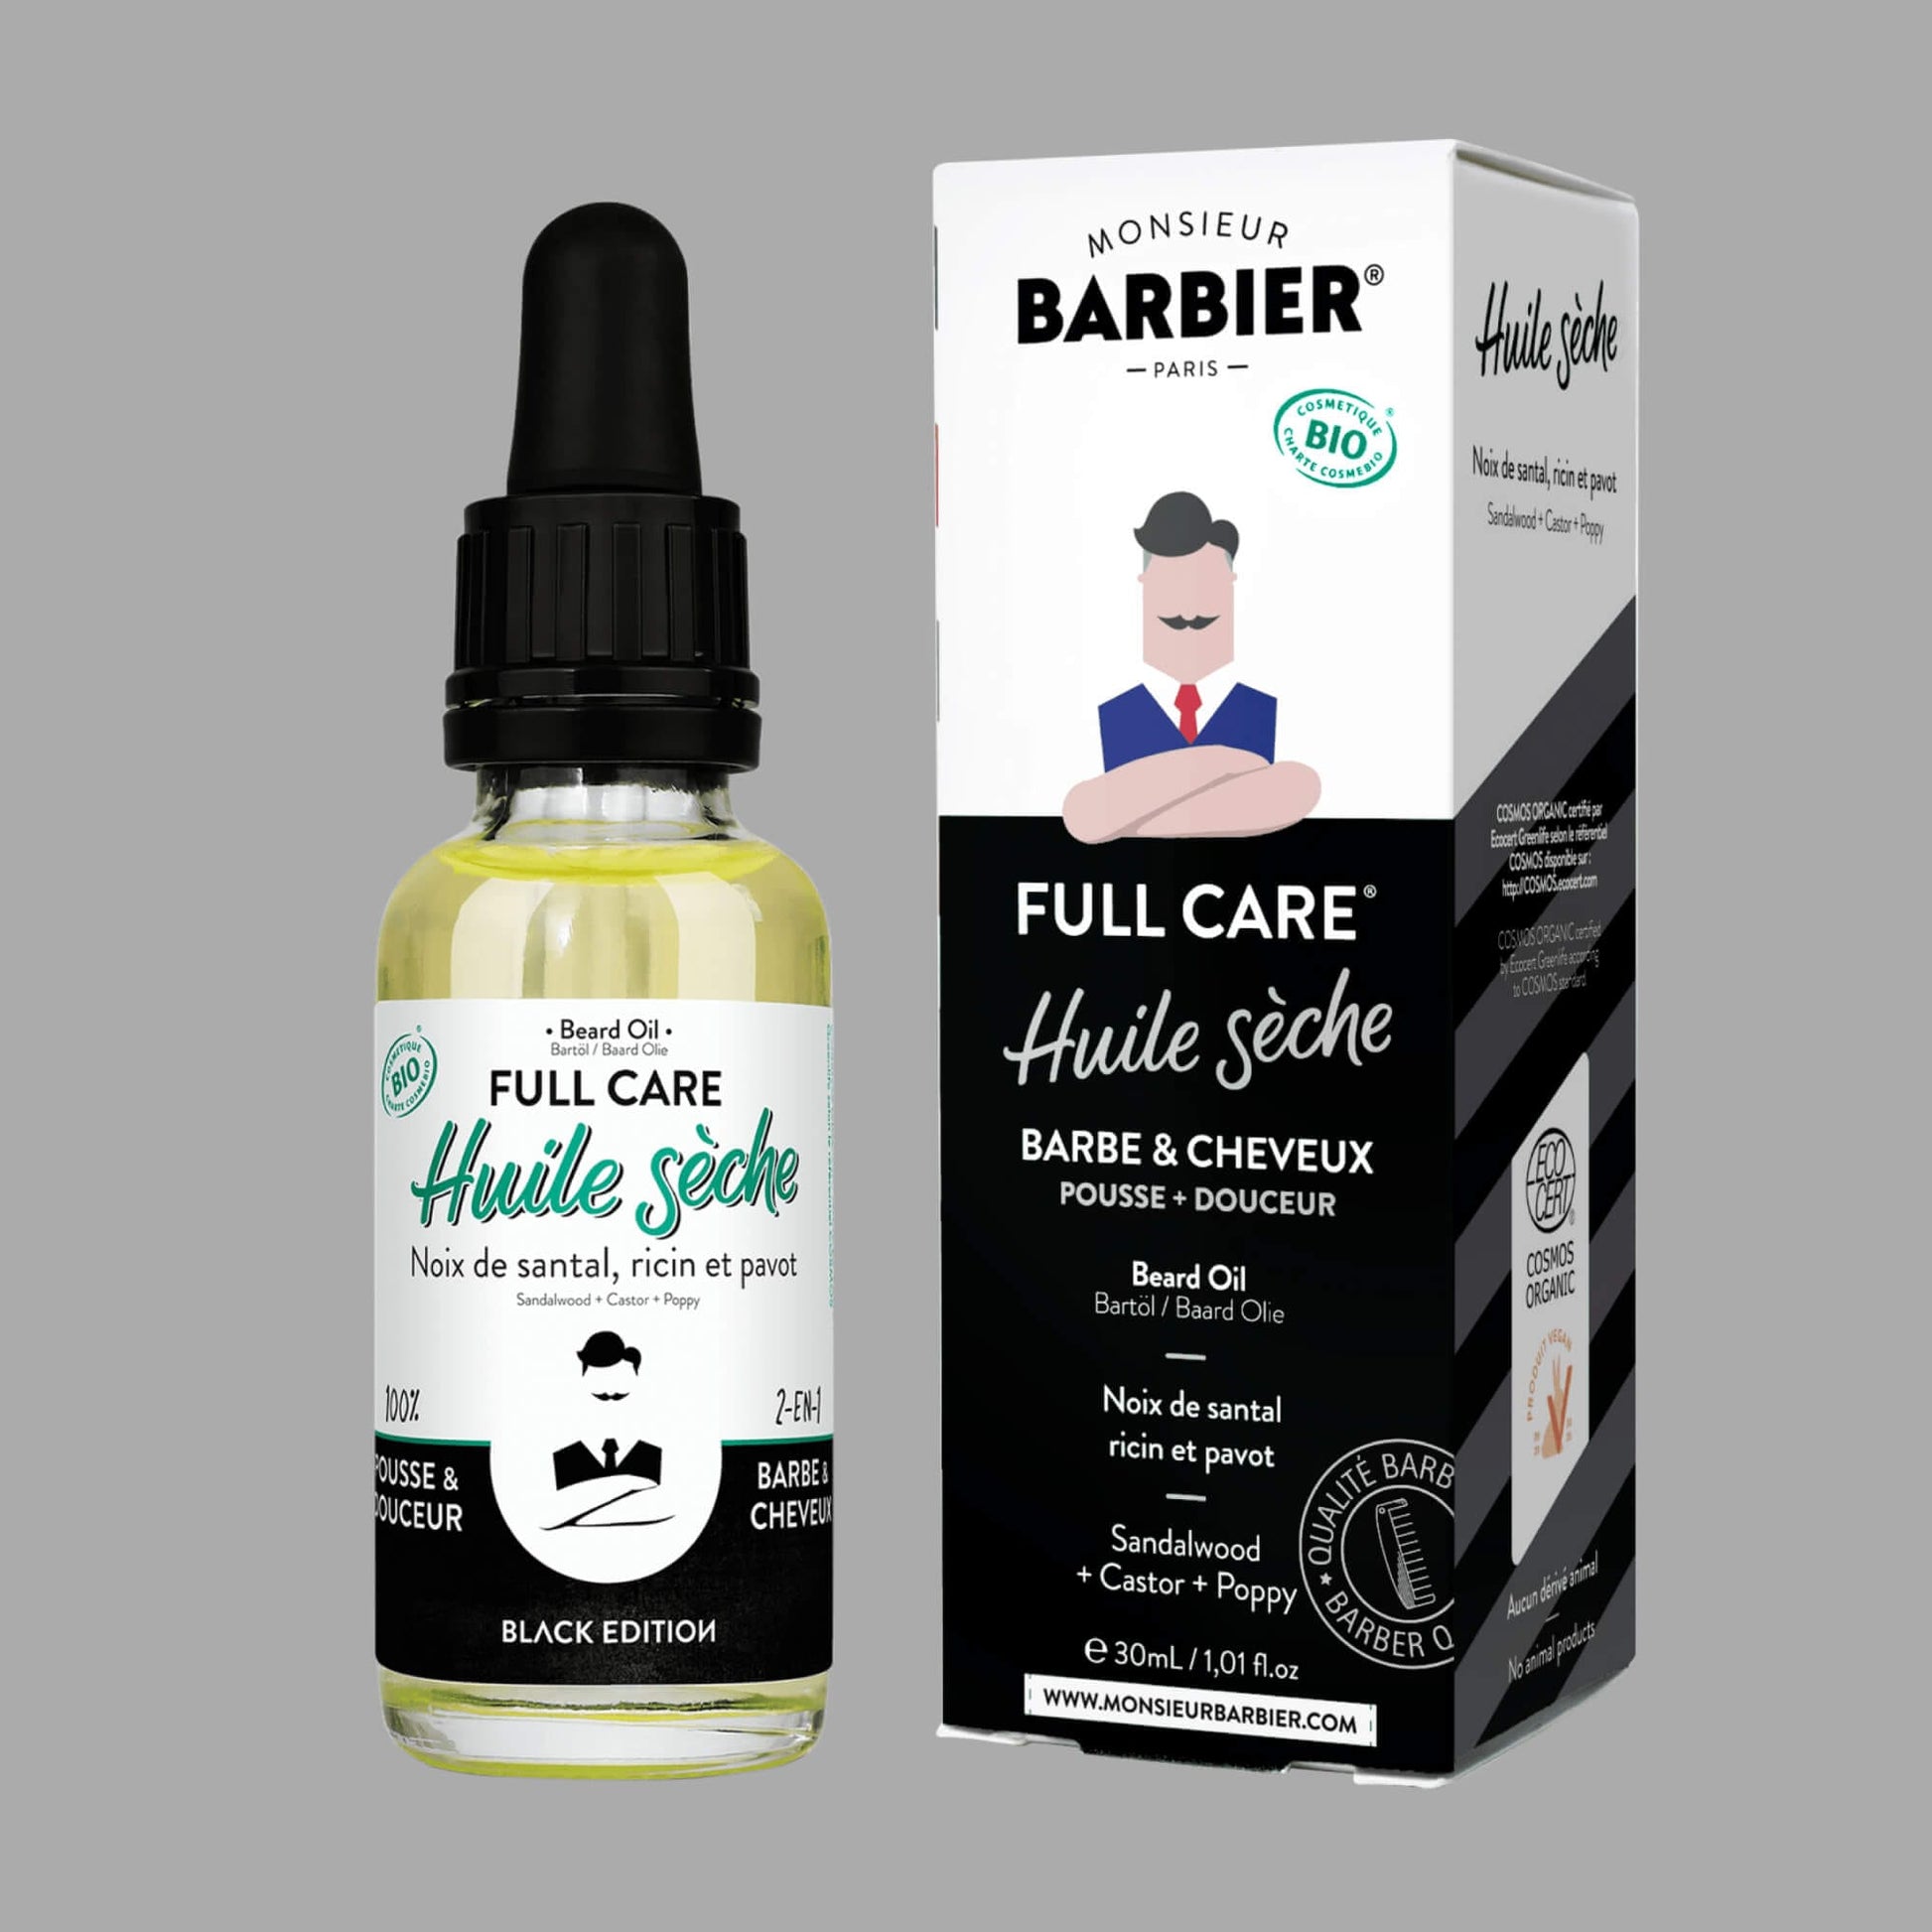 Huile sèche Bio Barbe & Cheveux FULL CARE Black Edition par Monsieur BARBIER - vue de l'emballage